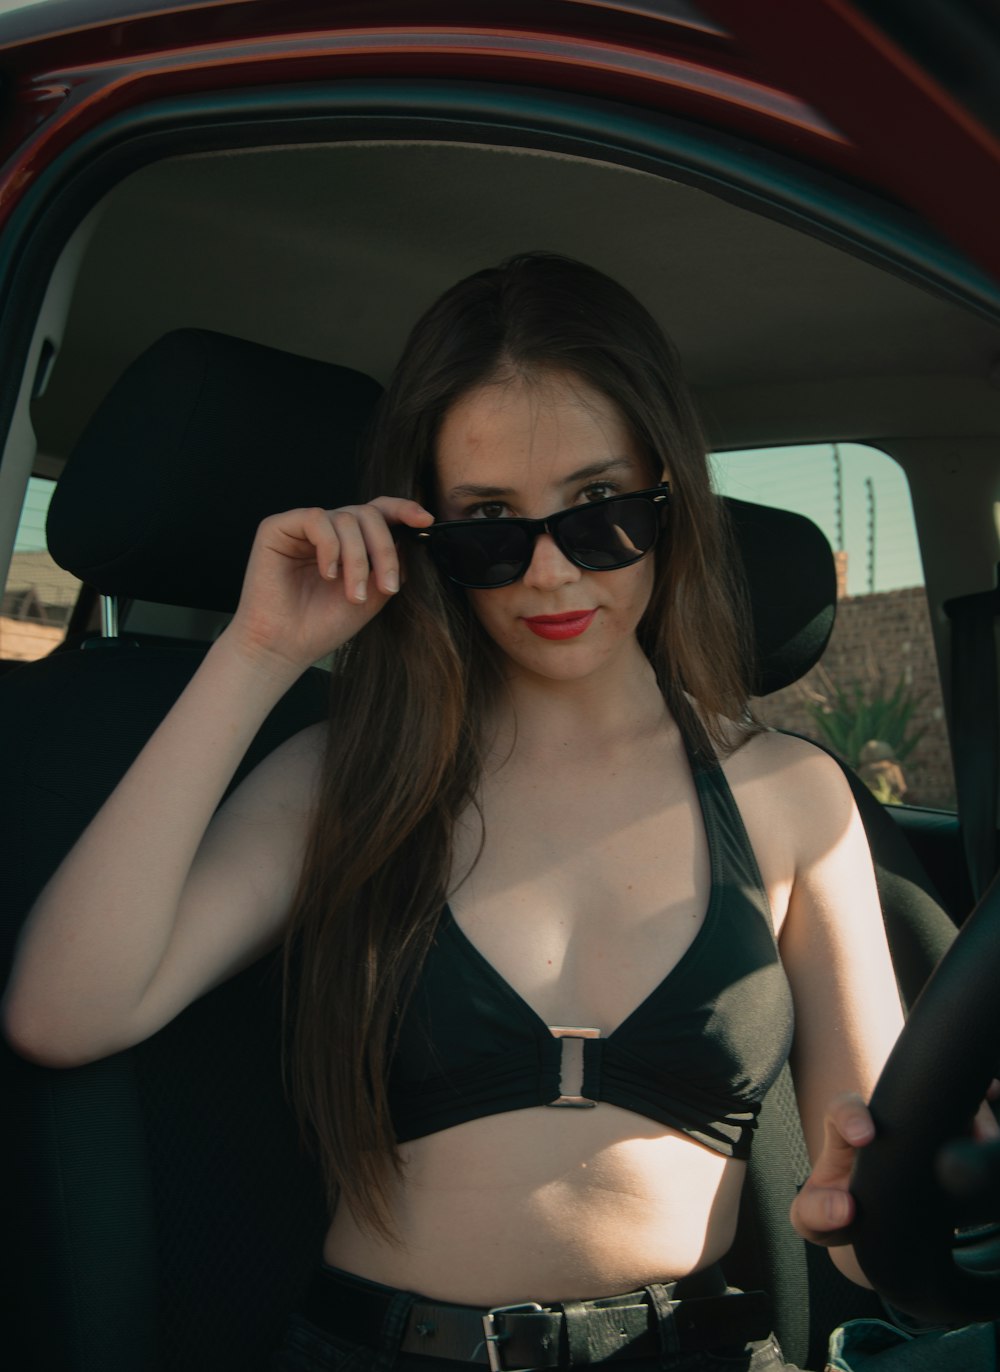 a woman in a bikini sitting in a car